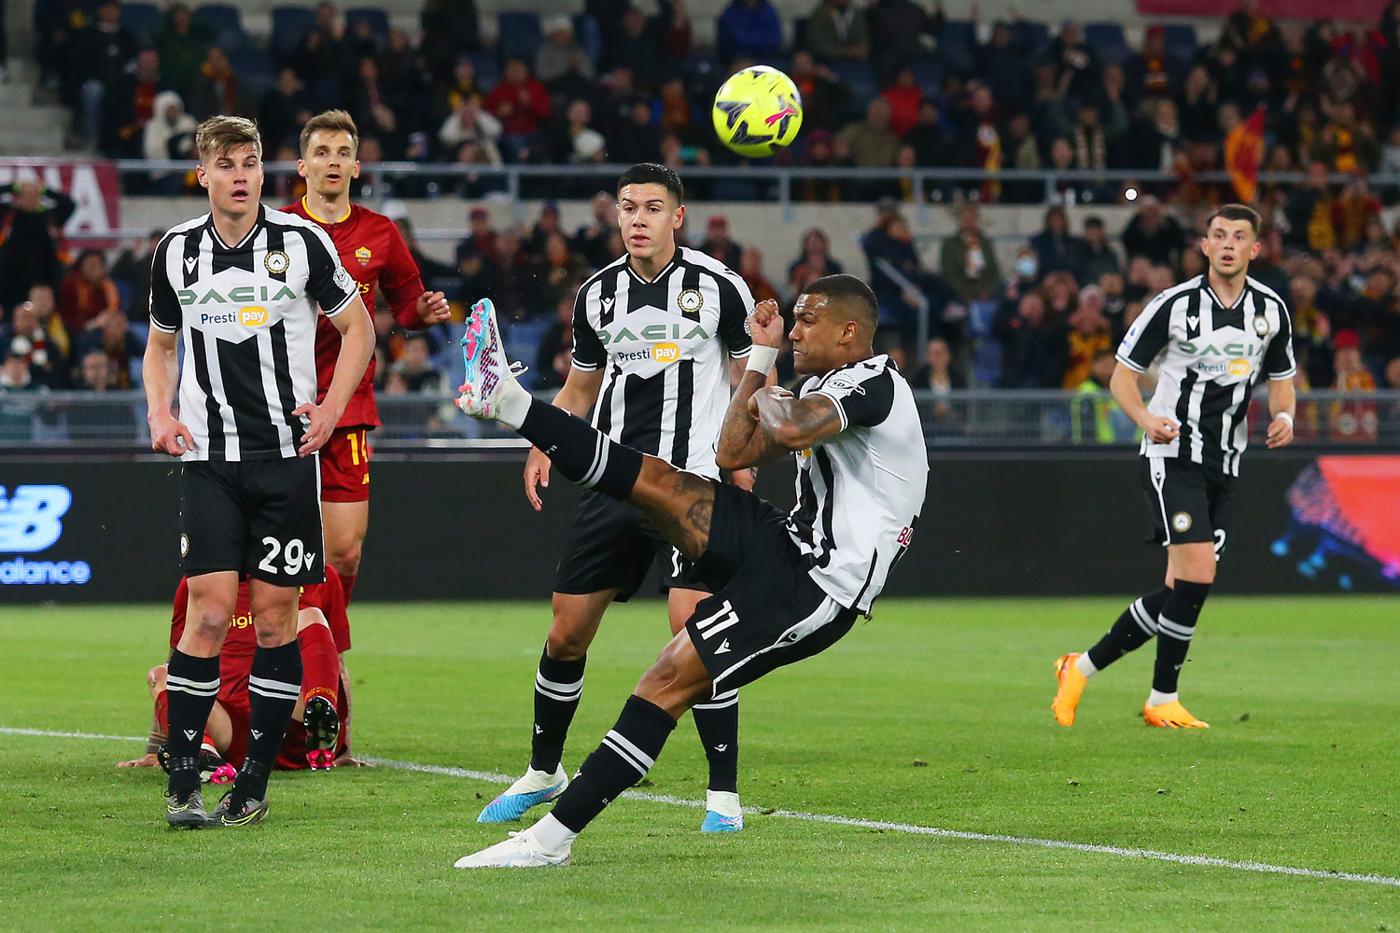 Roma v Udinese - 3-0. Mistrzostwo Włoch, runda 30. Przegląd meczu, statystyki